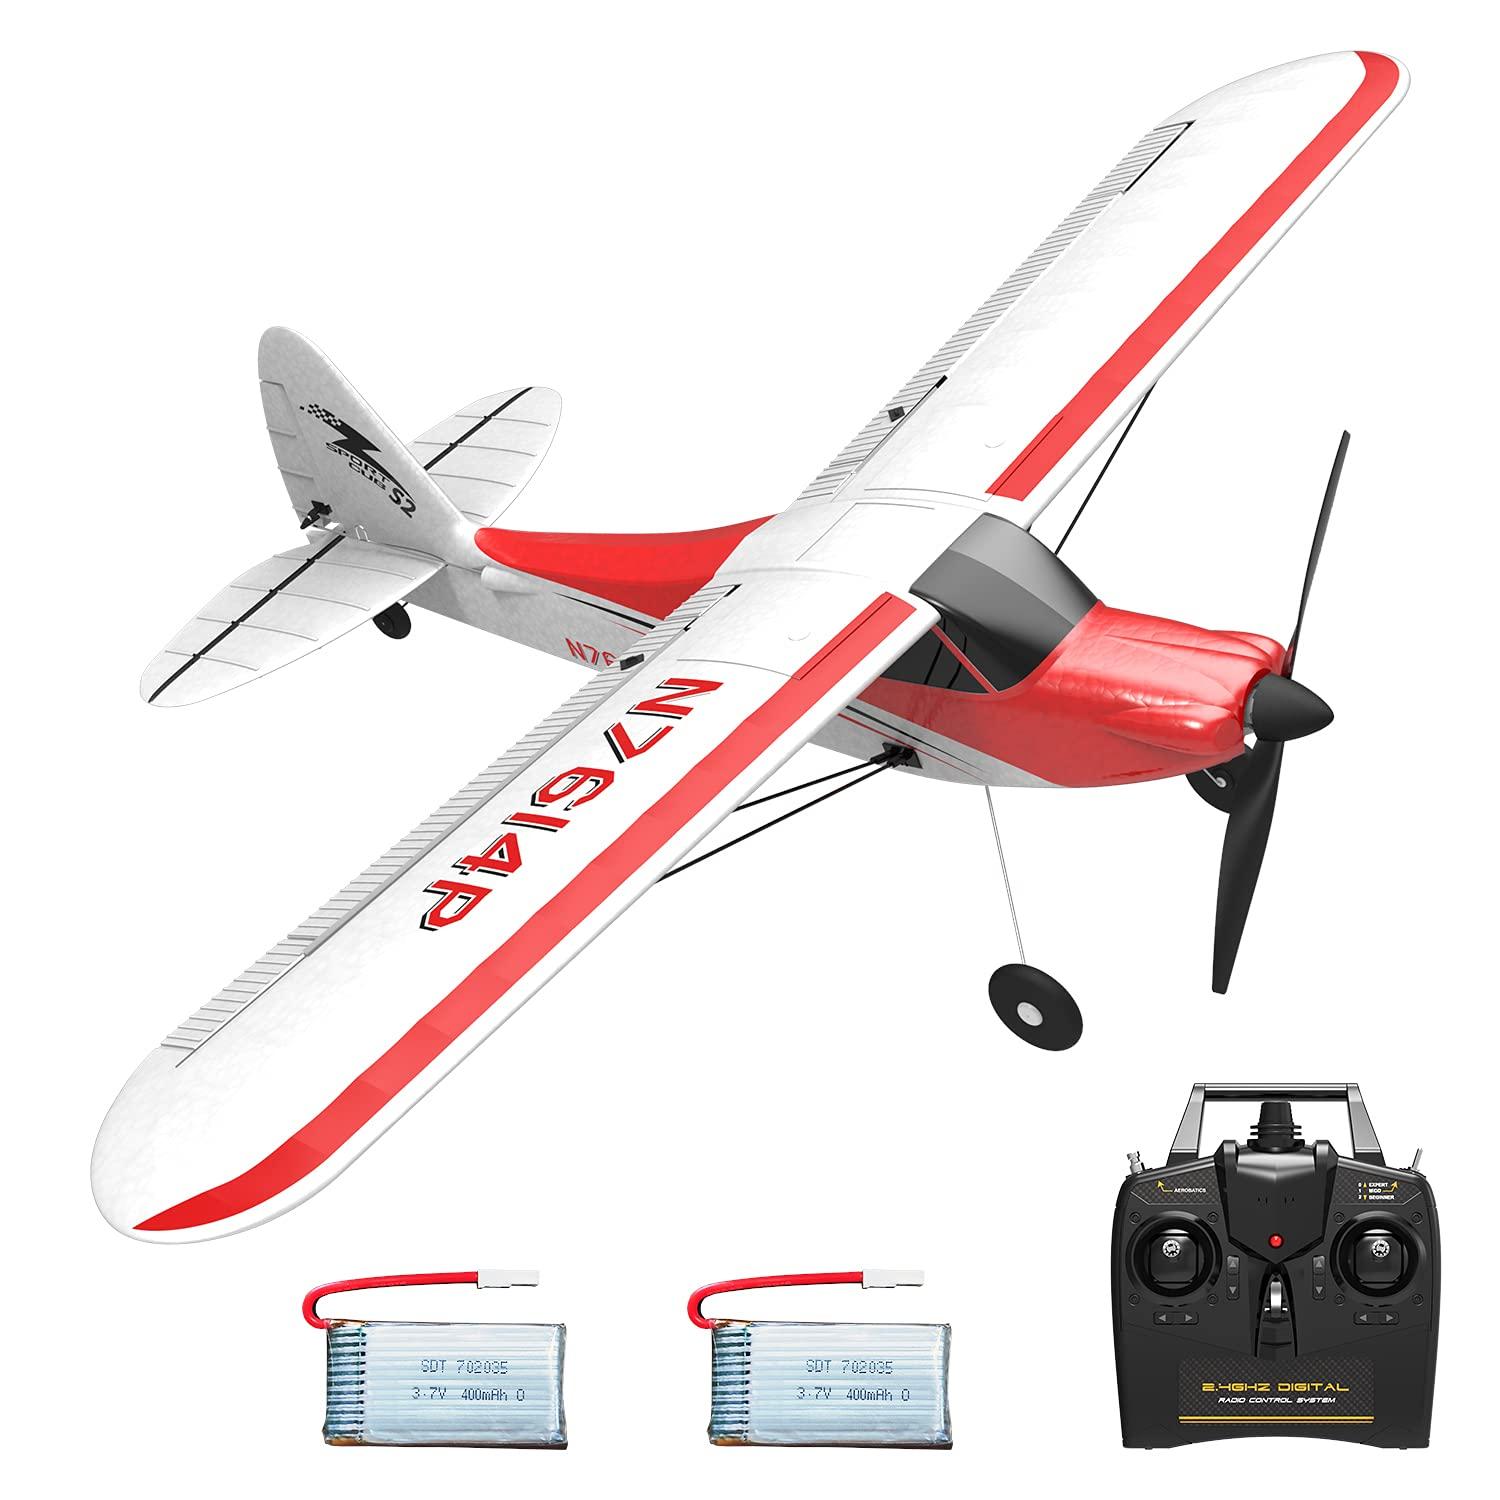 Remote Control Aeroplane Remote Control Aeroplane: Developing Remote Control Aeroplane Flying Skills